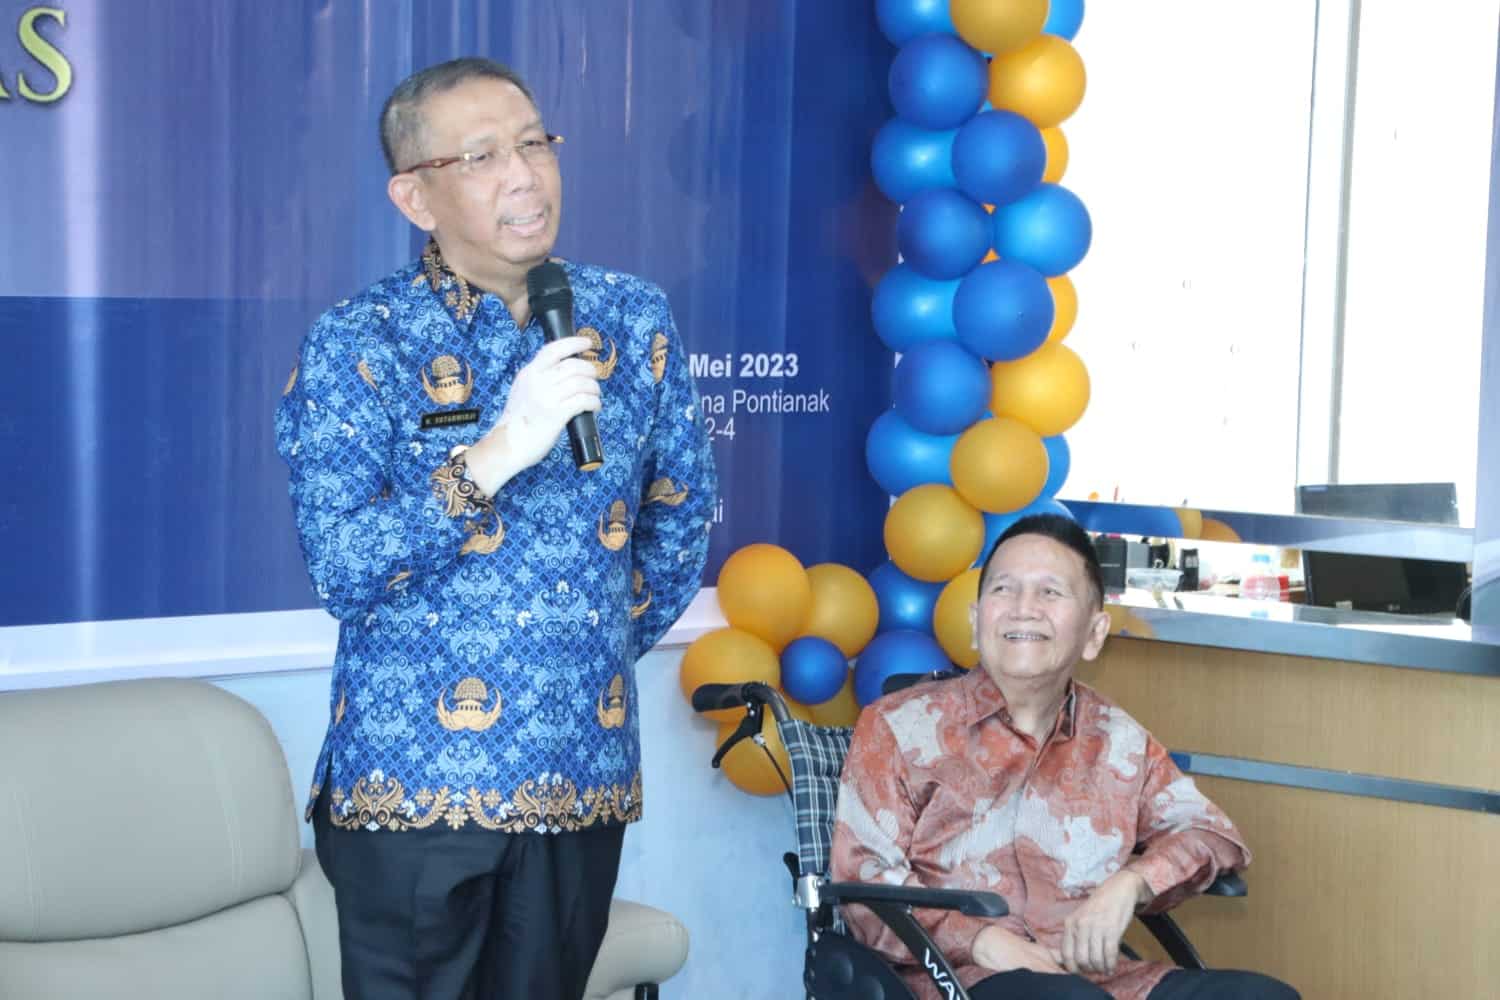 Gubernur Kalimantan Barat (Kalbar), Sutarmidji memberikan kata sambutan dalam acara peluncuran buku berjudul "Tabrani Hadi Sang Penggagas Yang Unik", di Kantor Graha Pena Pontianak Post, Rabu (17/05/2023) pagi. (Foto: Jauhari)